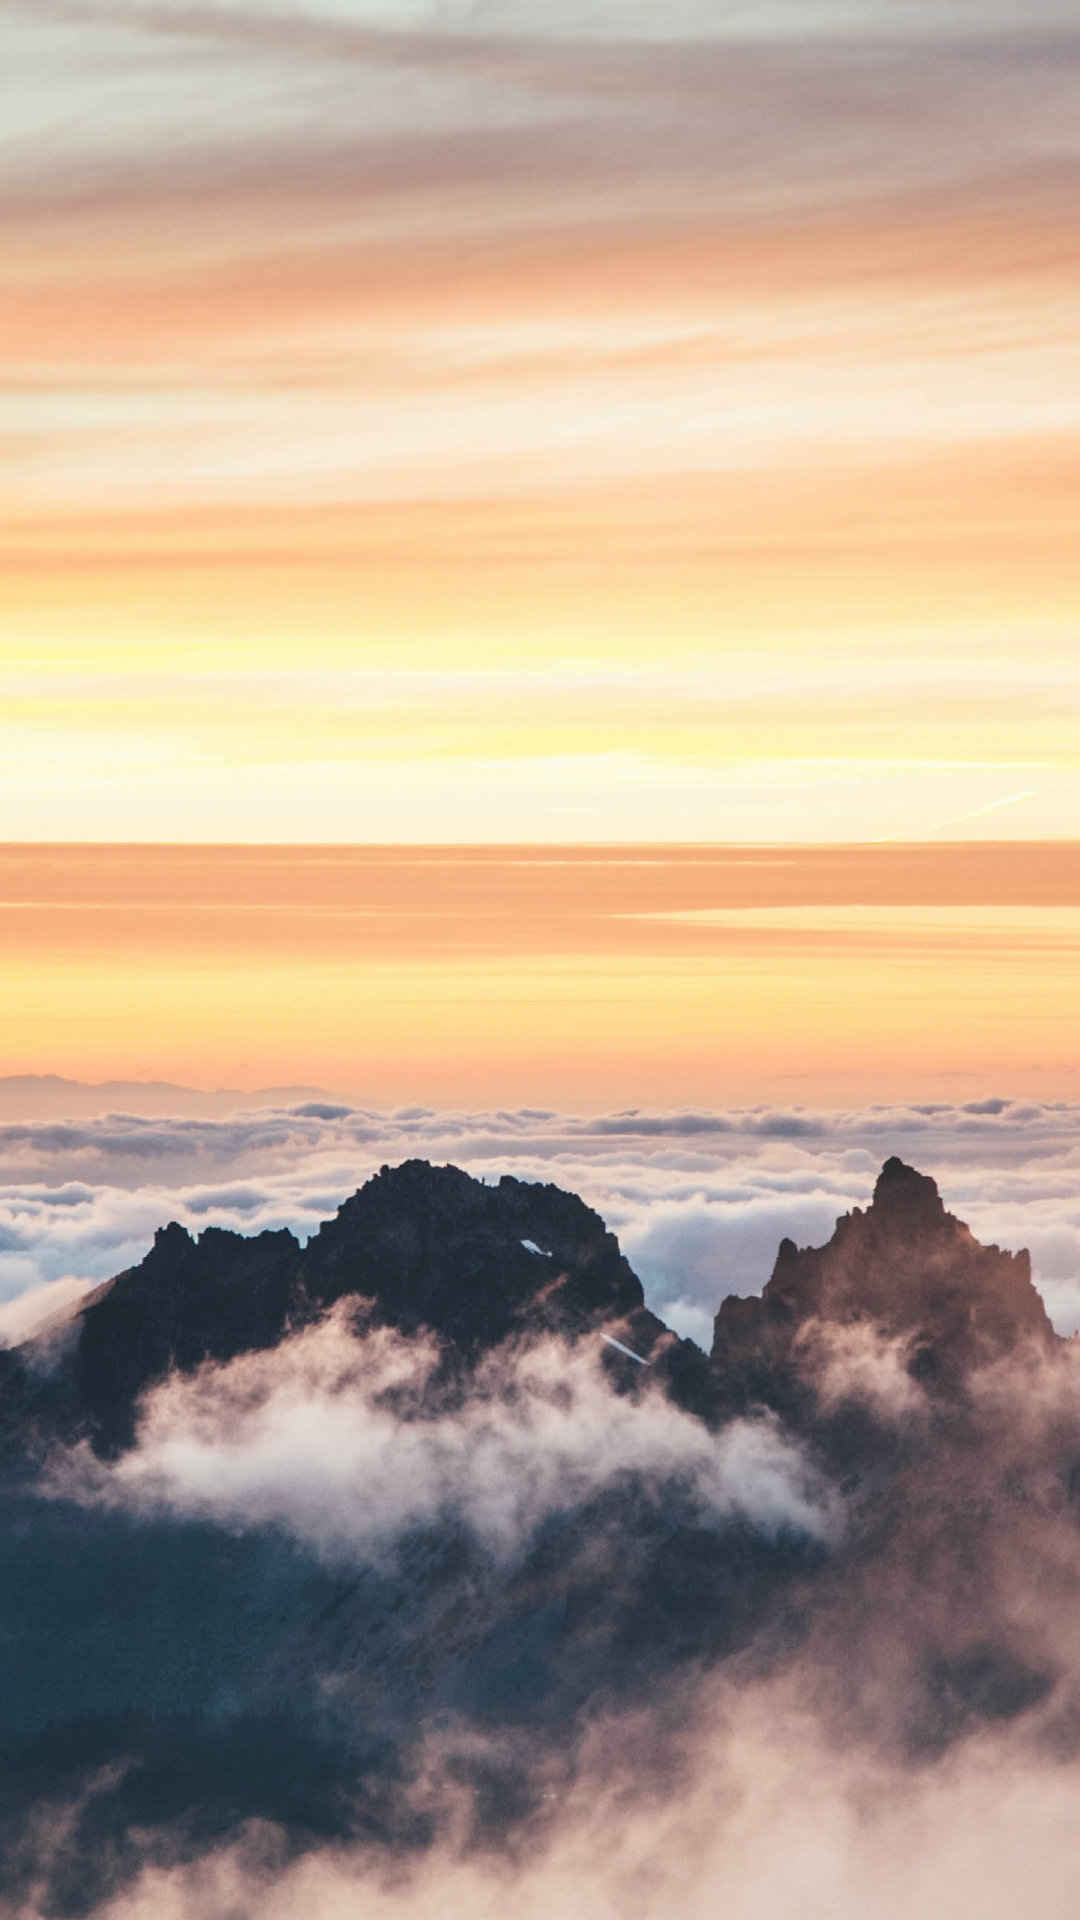 日出前黄色的云彩和雾气围绕的山脉唯美风景-